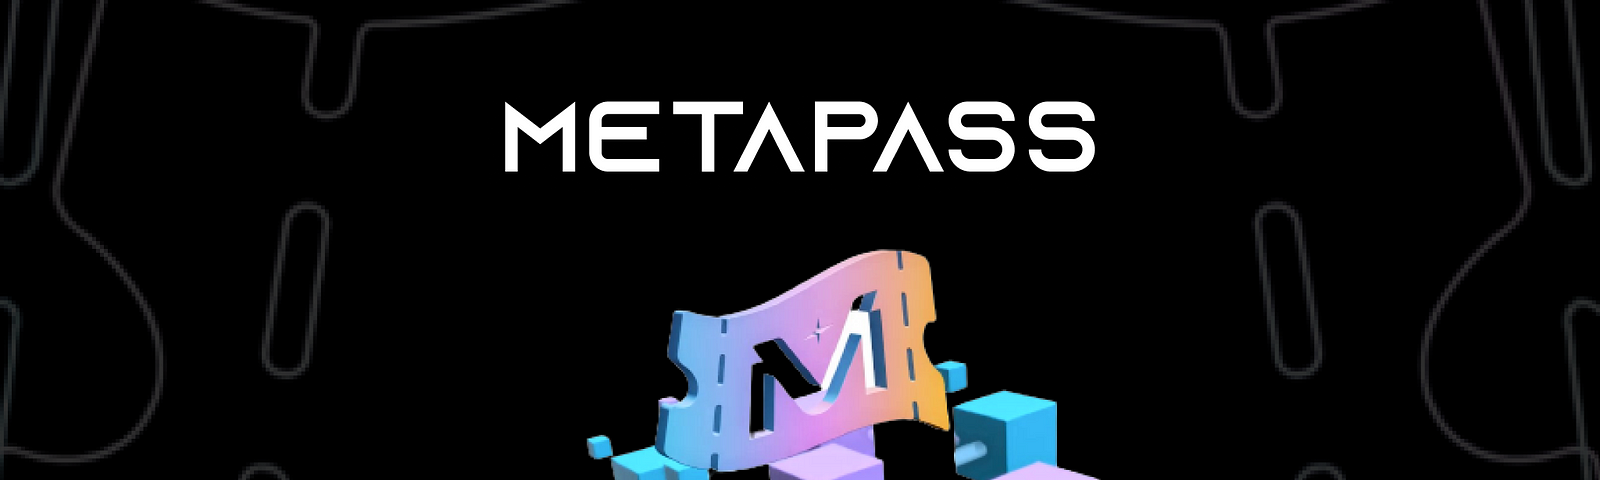 Metapass | The Dapp List